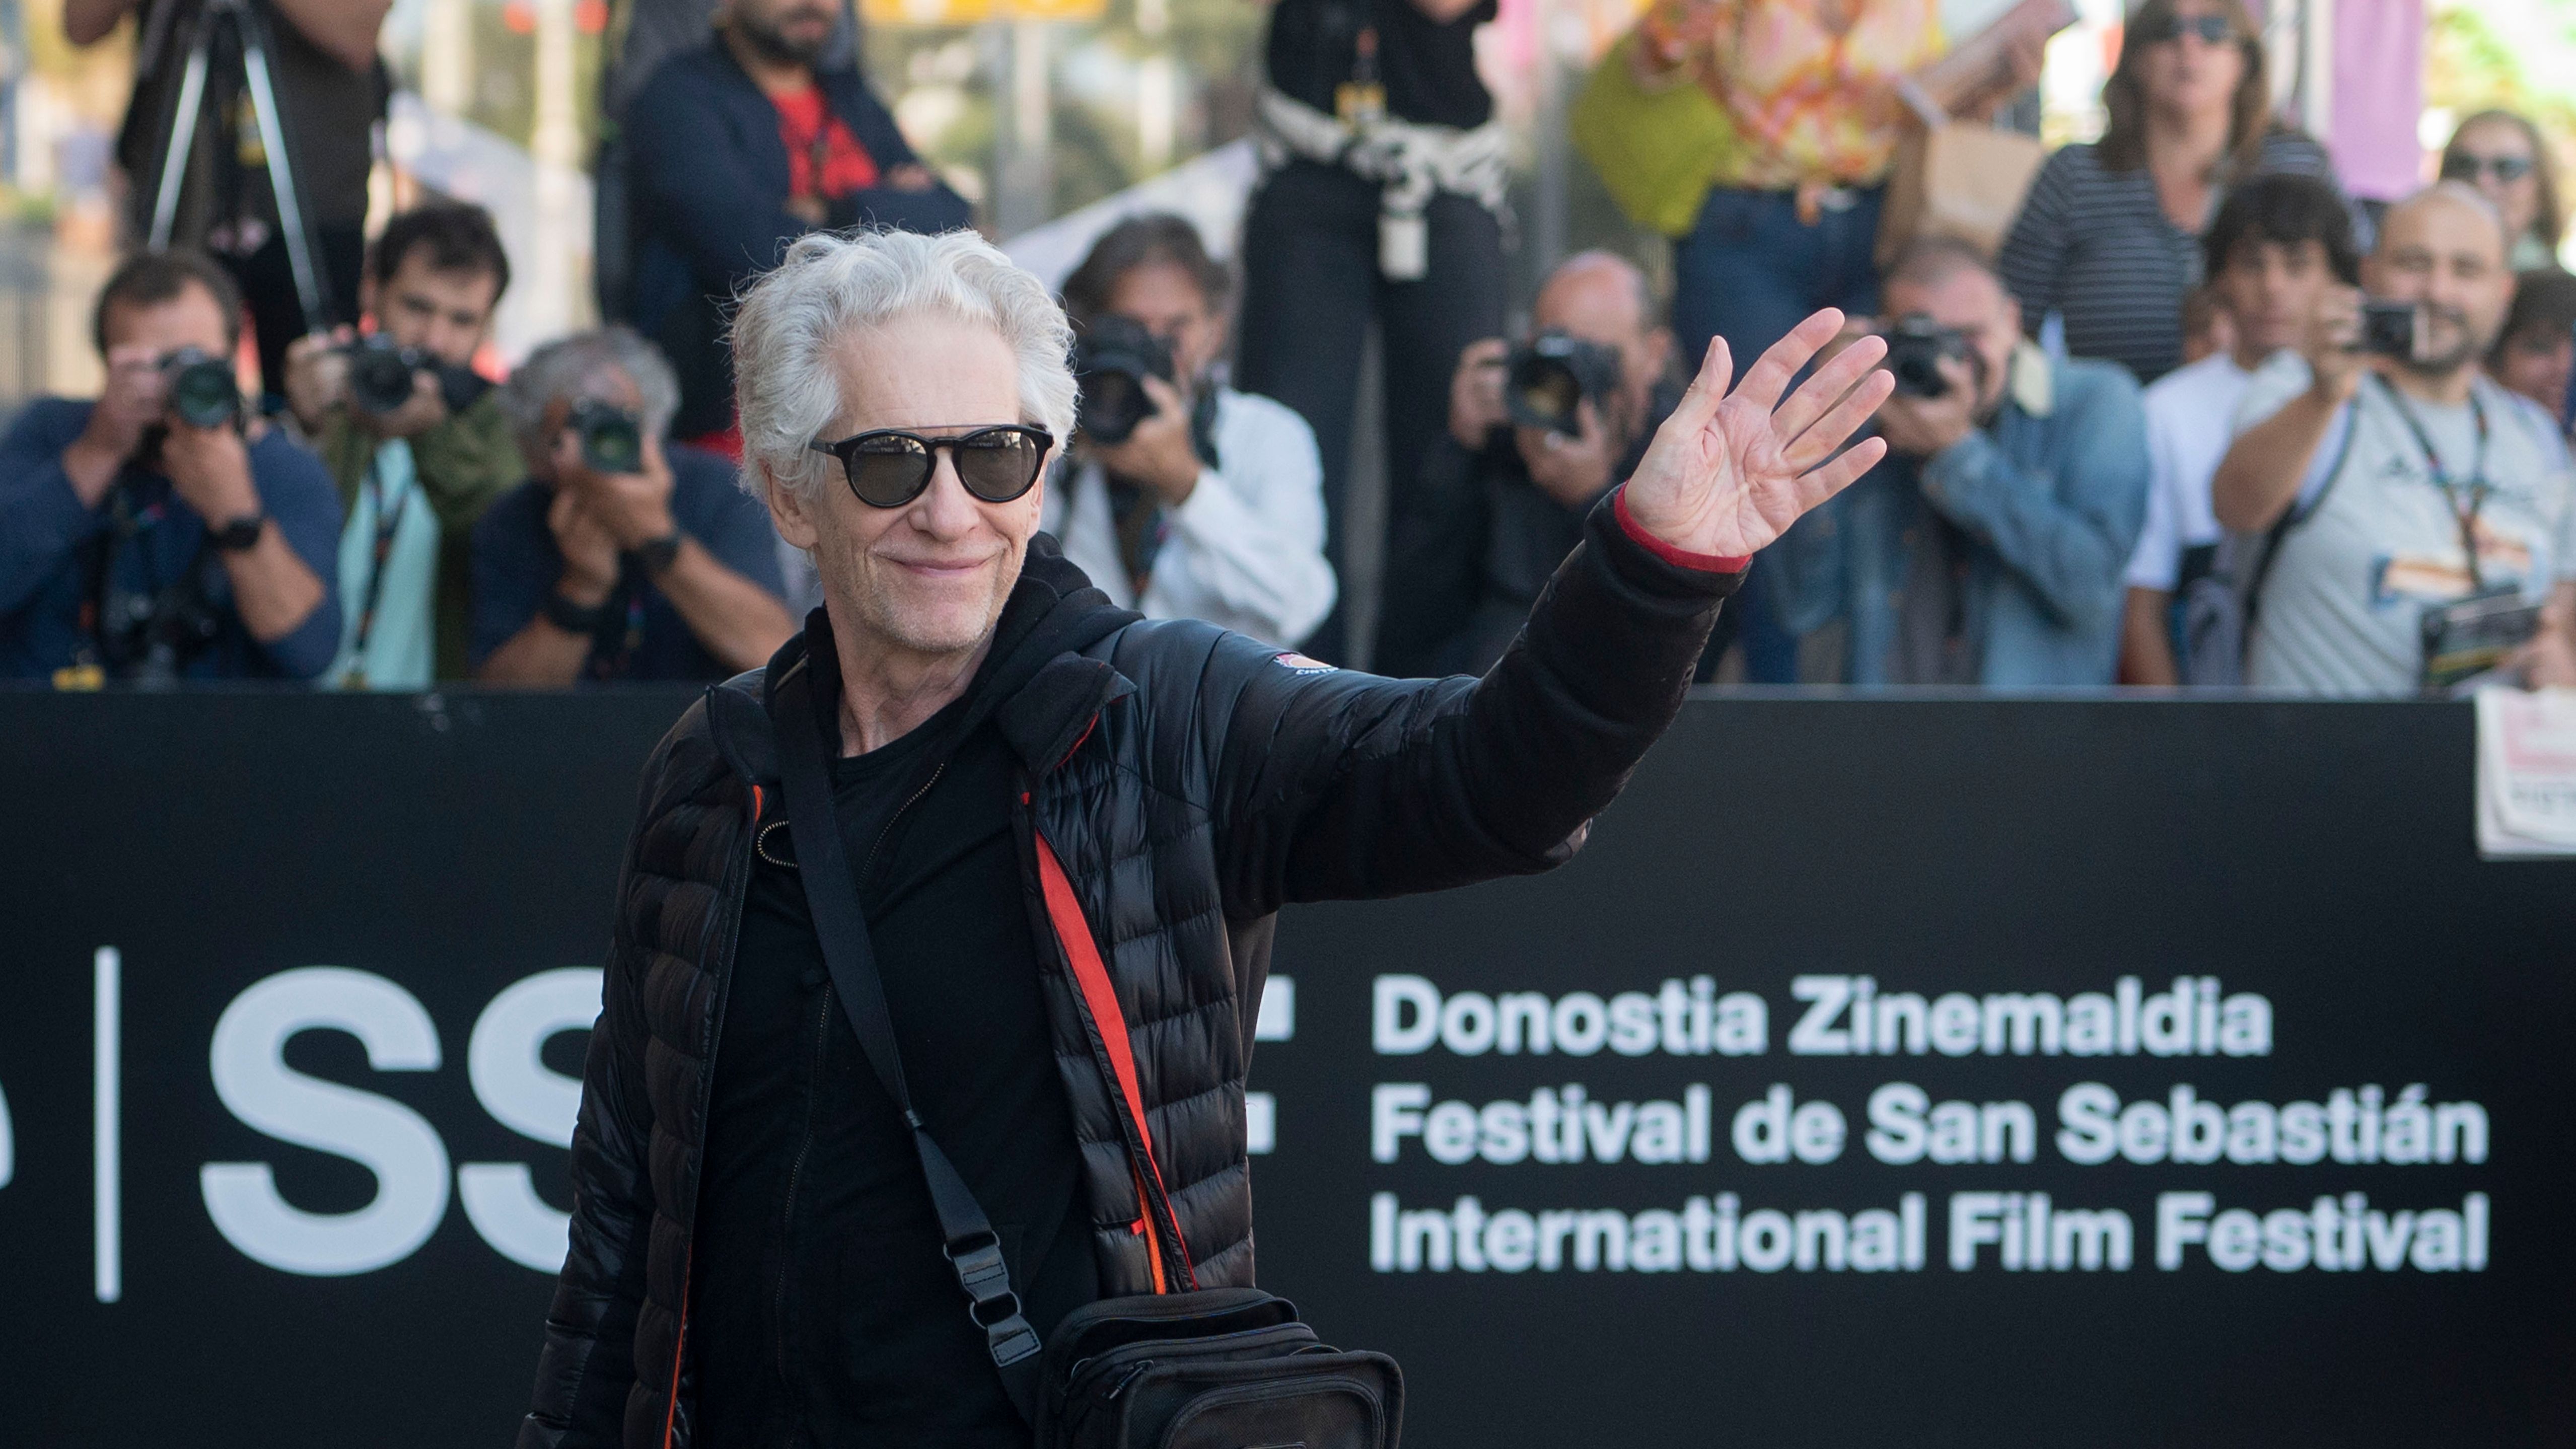 Encantador Adelantar tallarines David Cronenberg: "Quise ser novelista y el cine me ha secuestrado" - NIUS